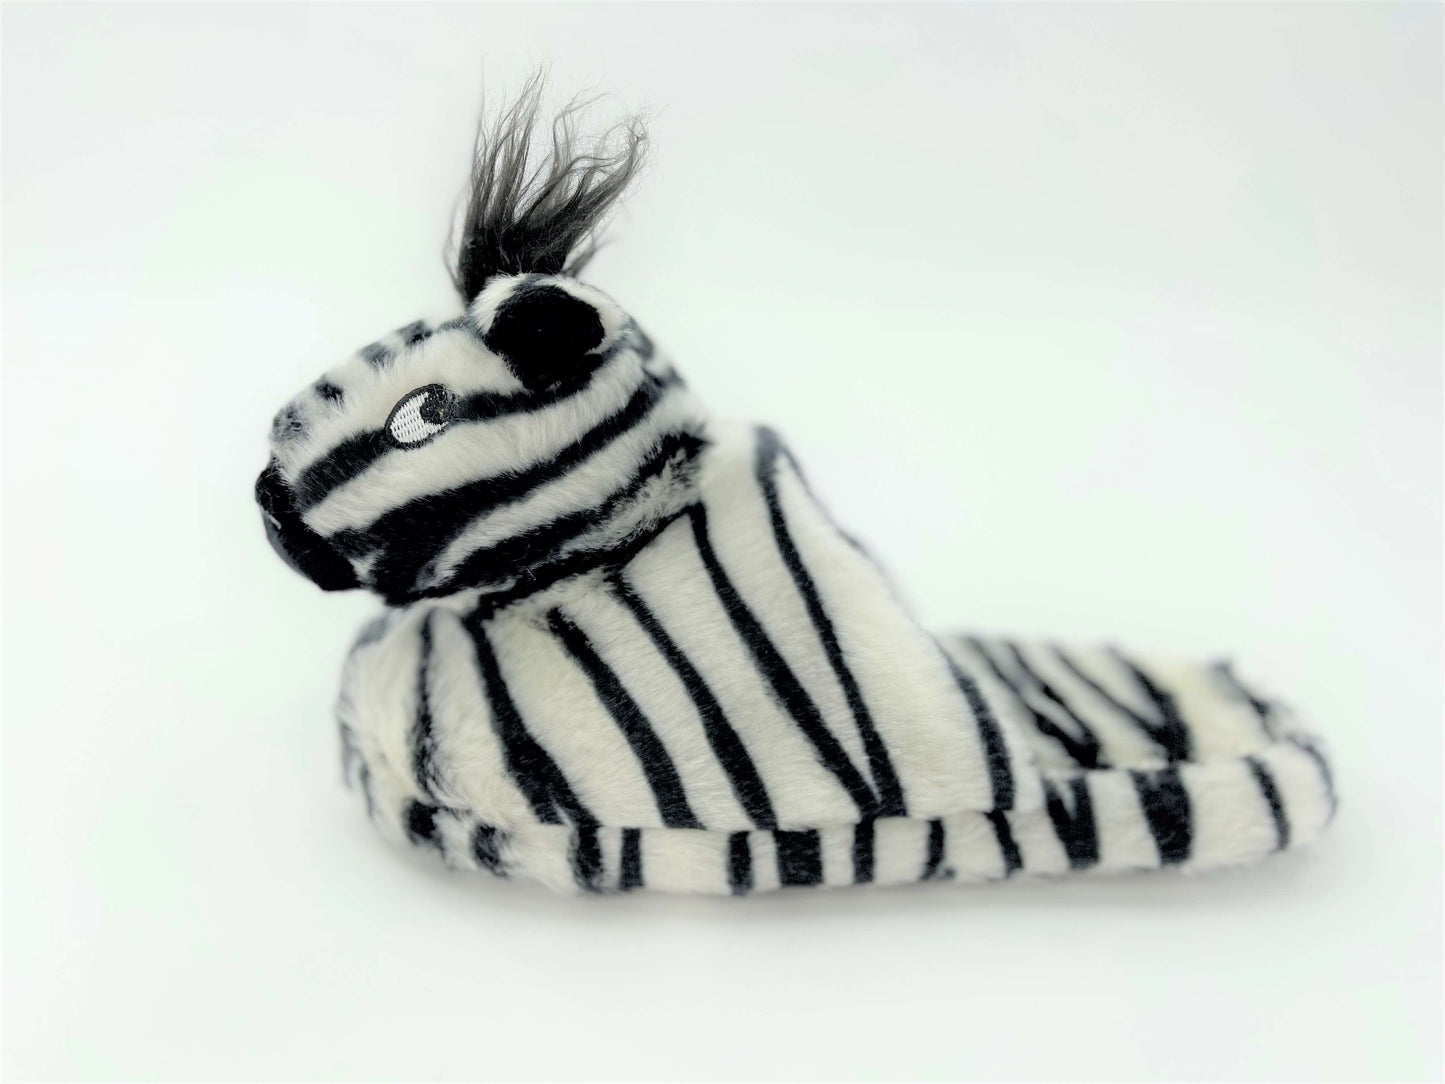 Ladies Plush 3D Zebra Novelty Slip On Mule Slippers